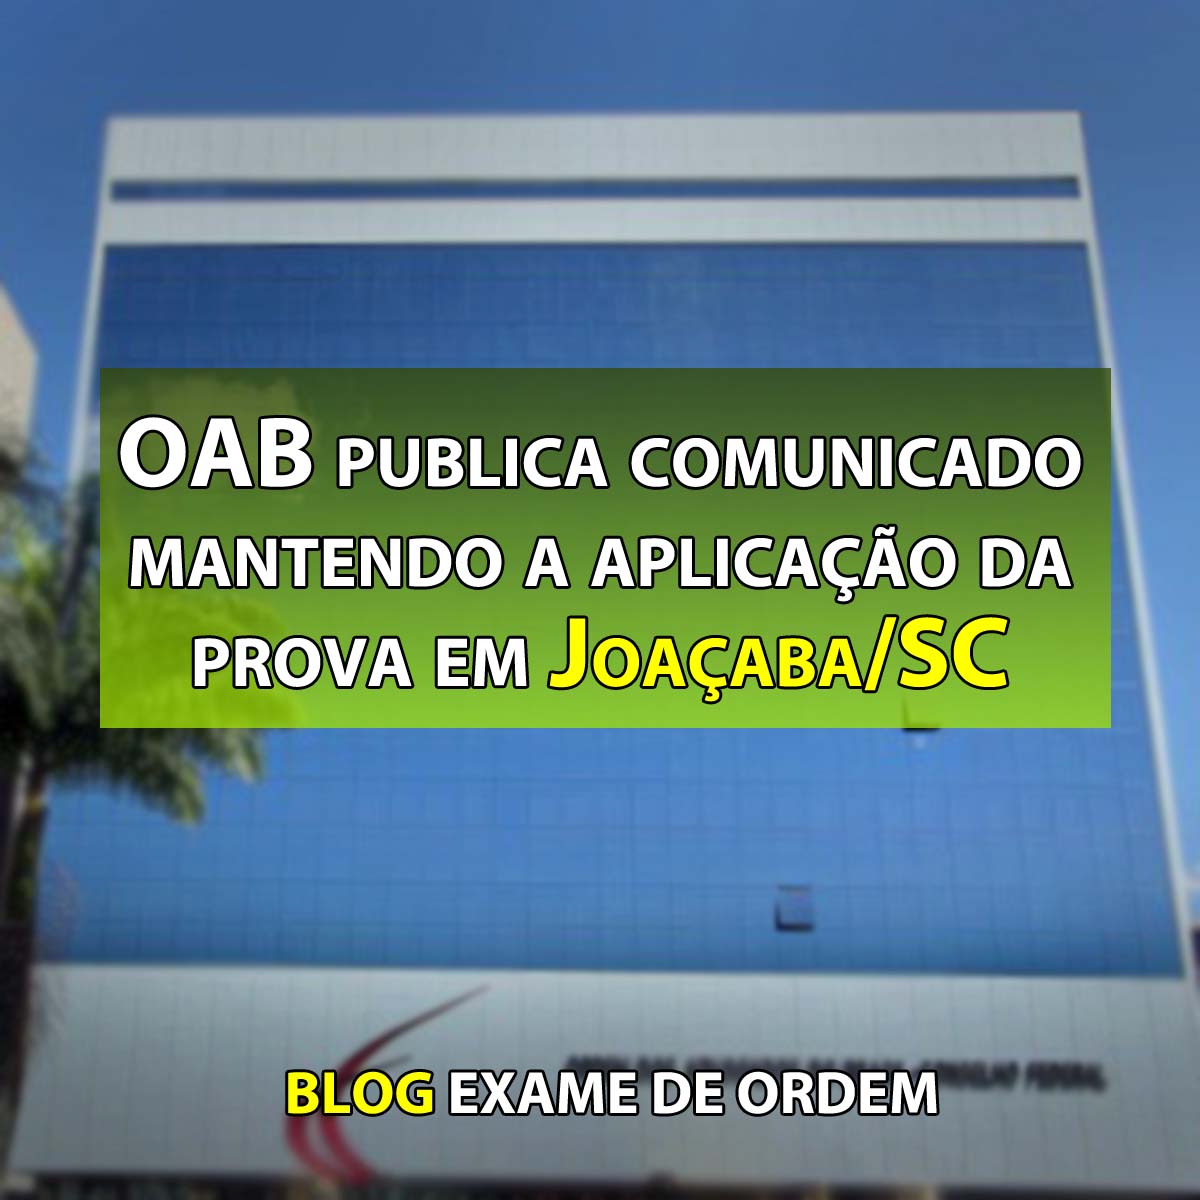 OAB publica comunicado mantendo a aplicação da prova em Joaçaba/SC